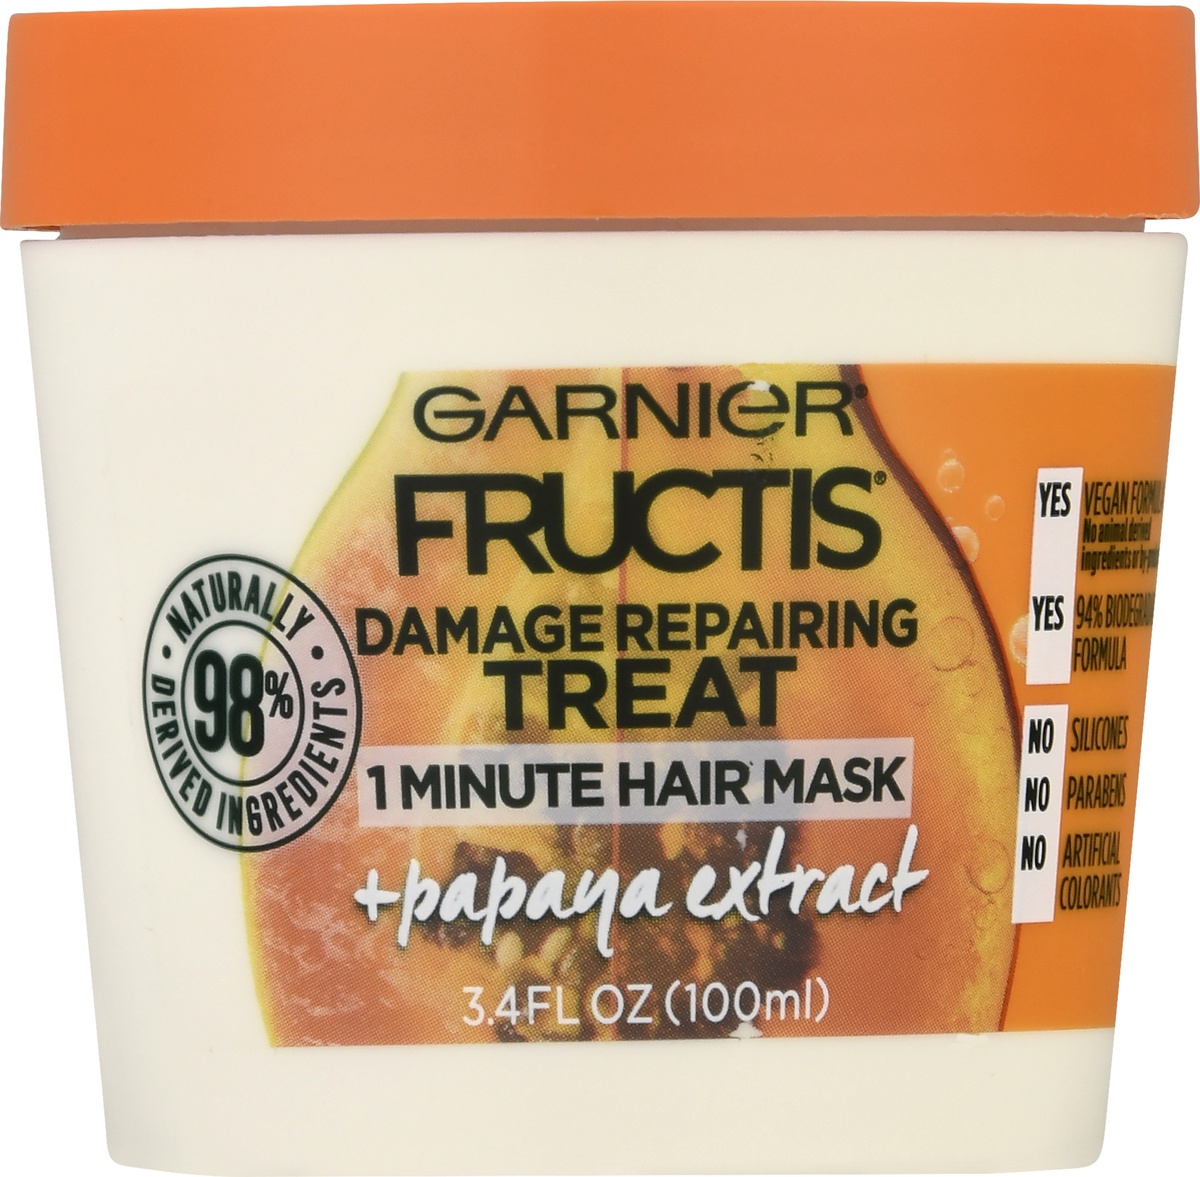 slide 6 of 9, Garnier Damage Repairing Treat Papaya Extract Hair Mask, 3.4 fl oz